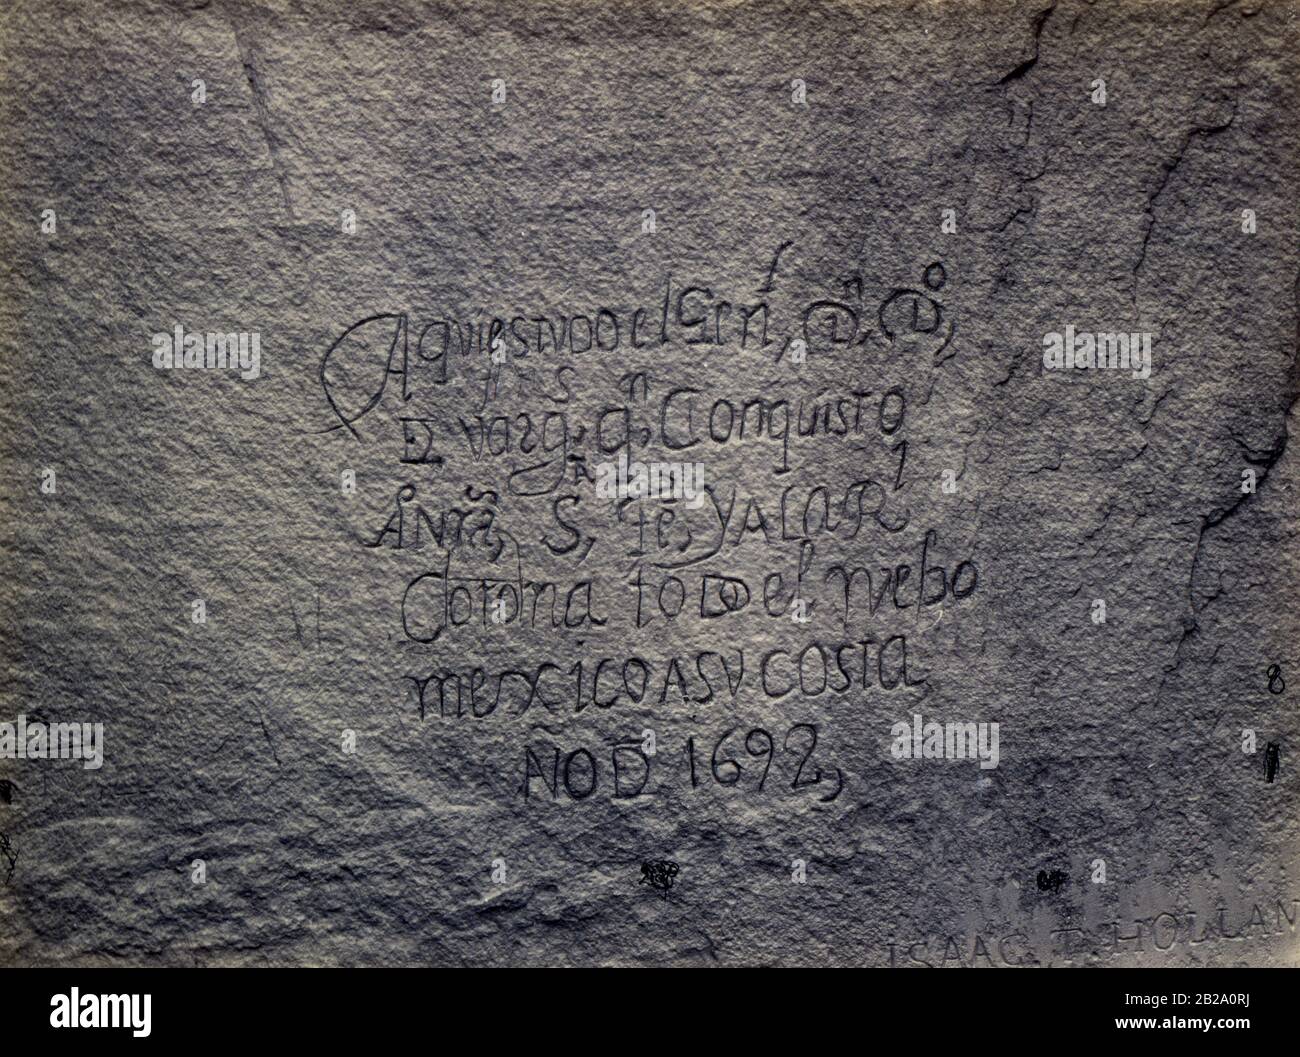 Historische spanische Aufzeichnung der Eroberung, Südseite des Inschrift Rock, New Mexico Stockfoto